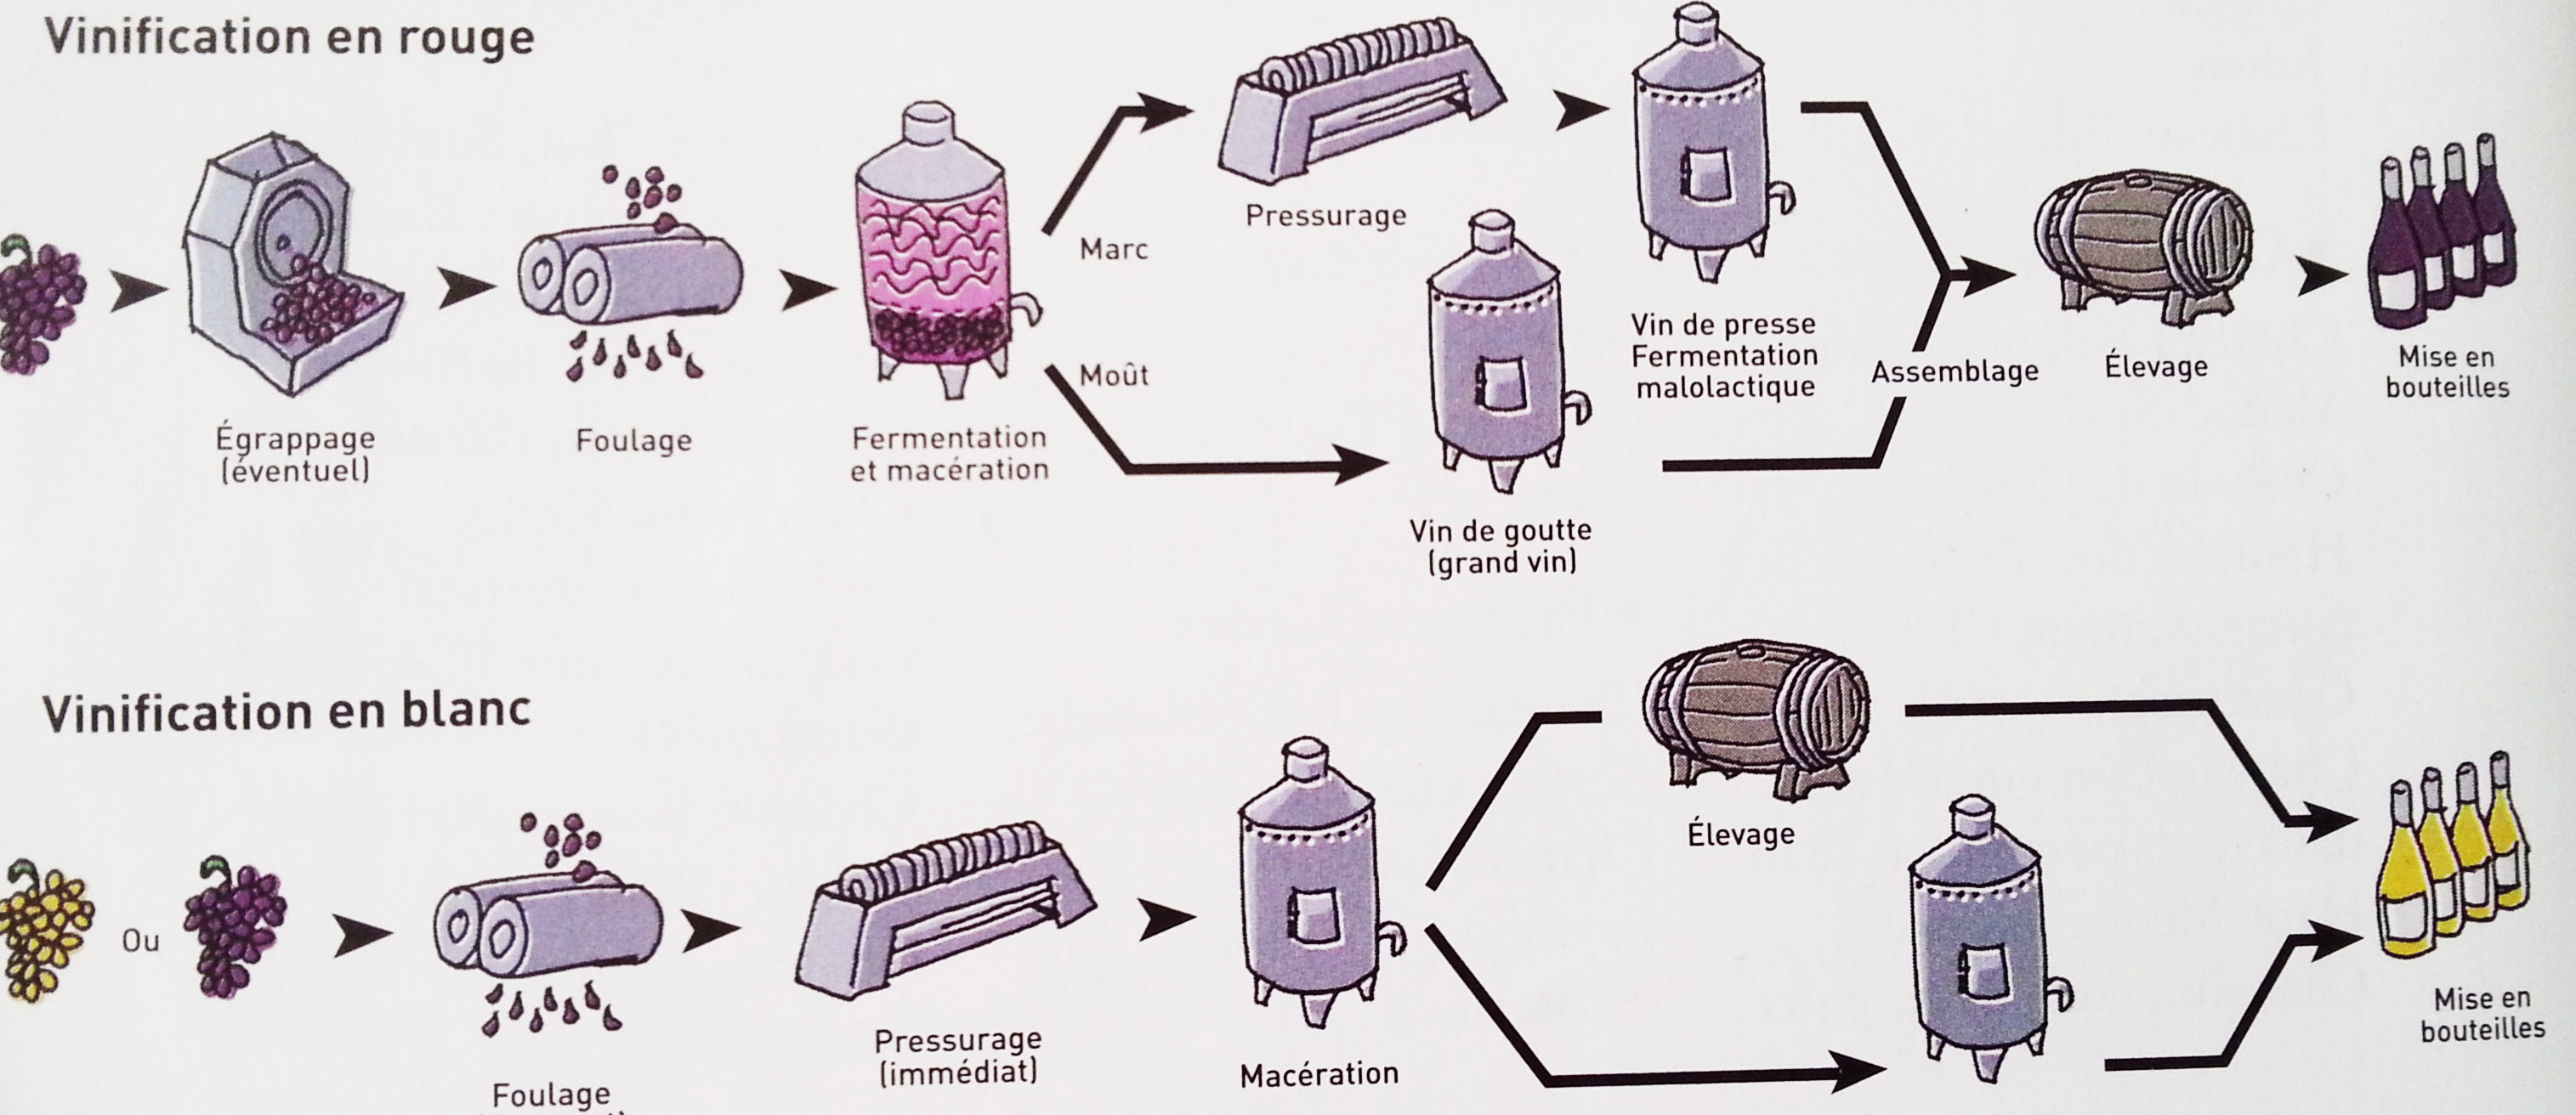 Schéma du processus de vinification